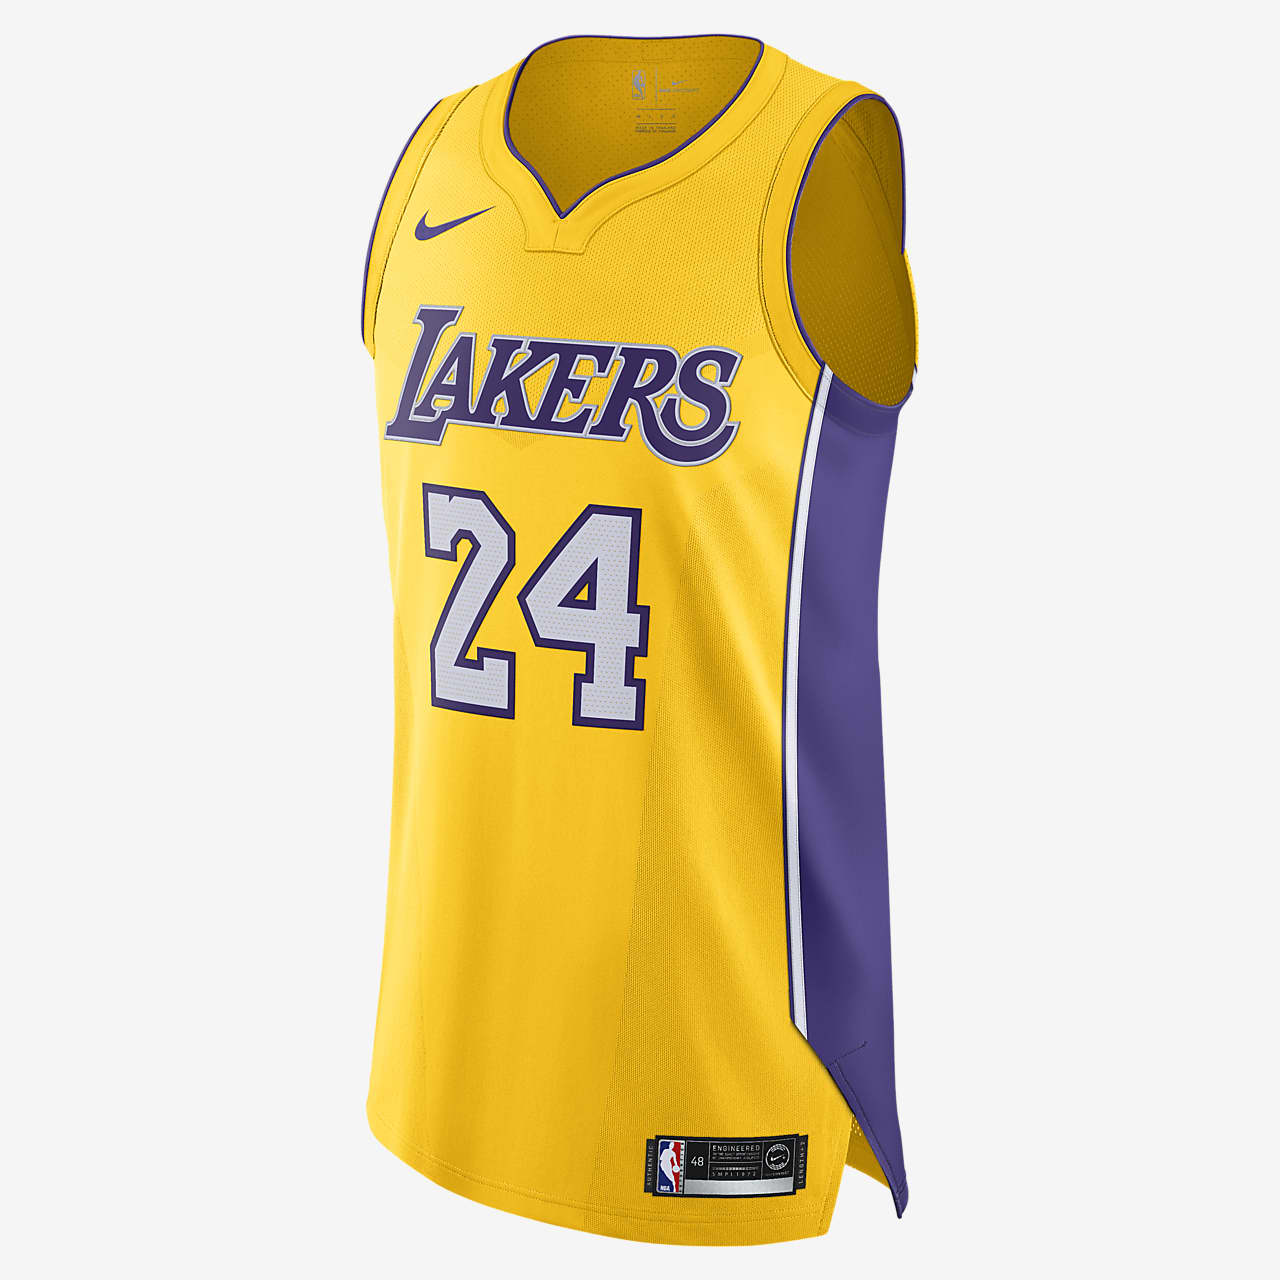 洛杉矶湖人队(Kobe Bryant) Icon Edition Nike NBA Authentic Jersey 